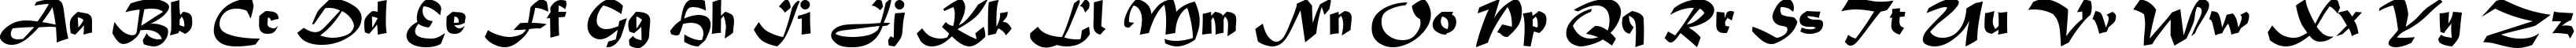 Пример написания английского алфавита шрифтом Matura MT Script Capitals